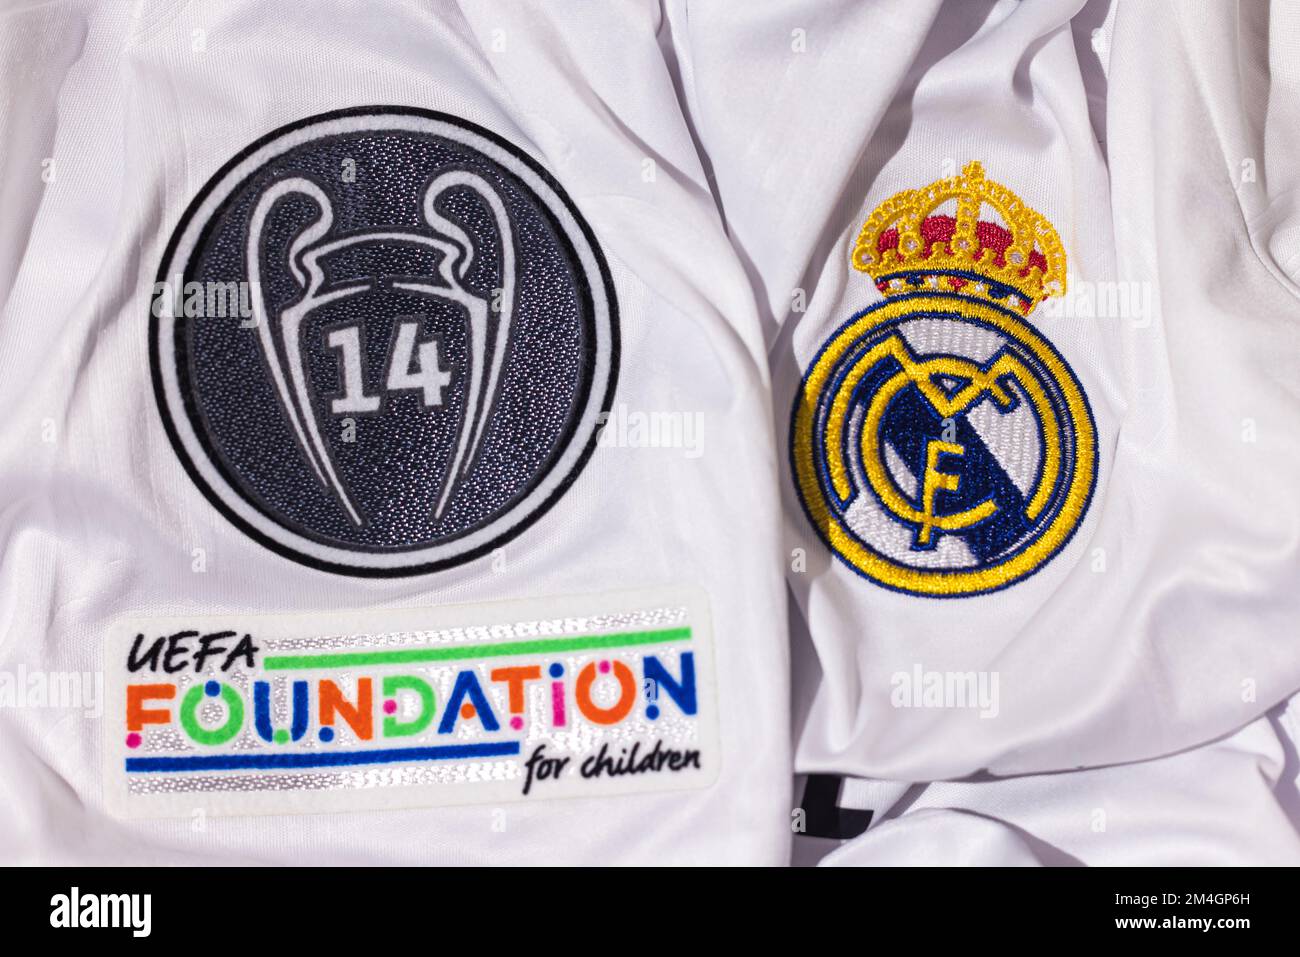 Bouclier sur le maillot blanc du Real Madrid football Club, avec bouclier de 14 coupes européennes et le signe de la Fondation UEFA. Ligue des champions de l'UEFA f Banque D'Images